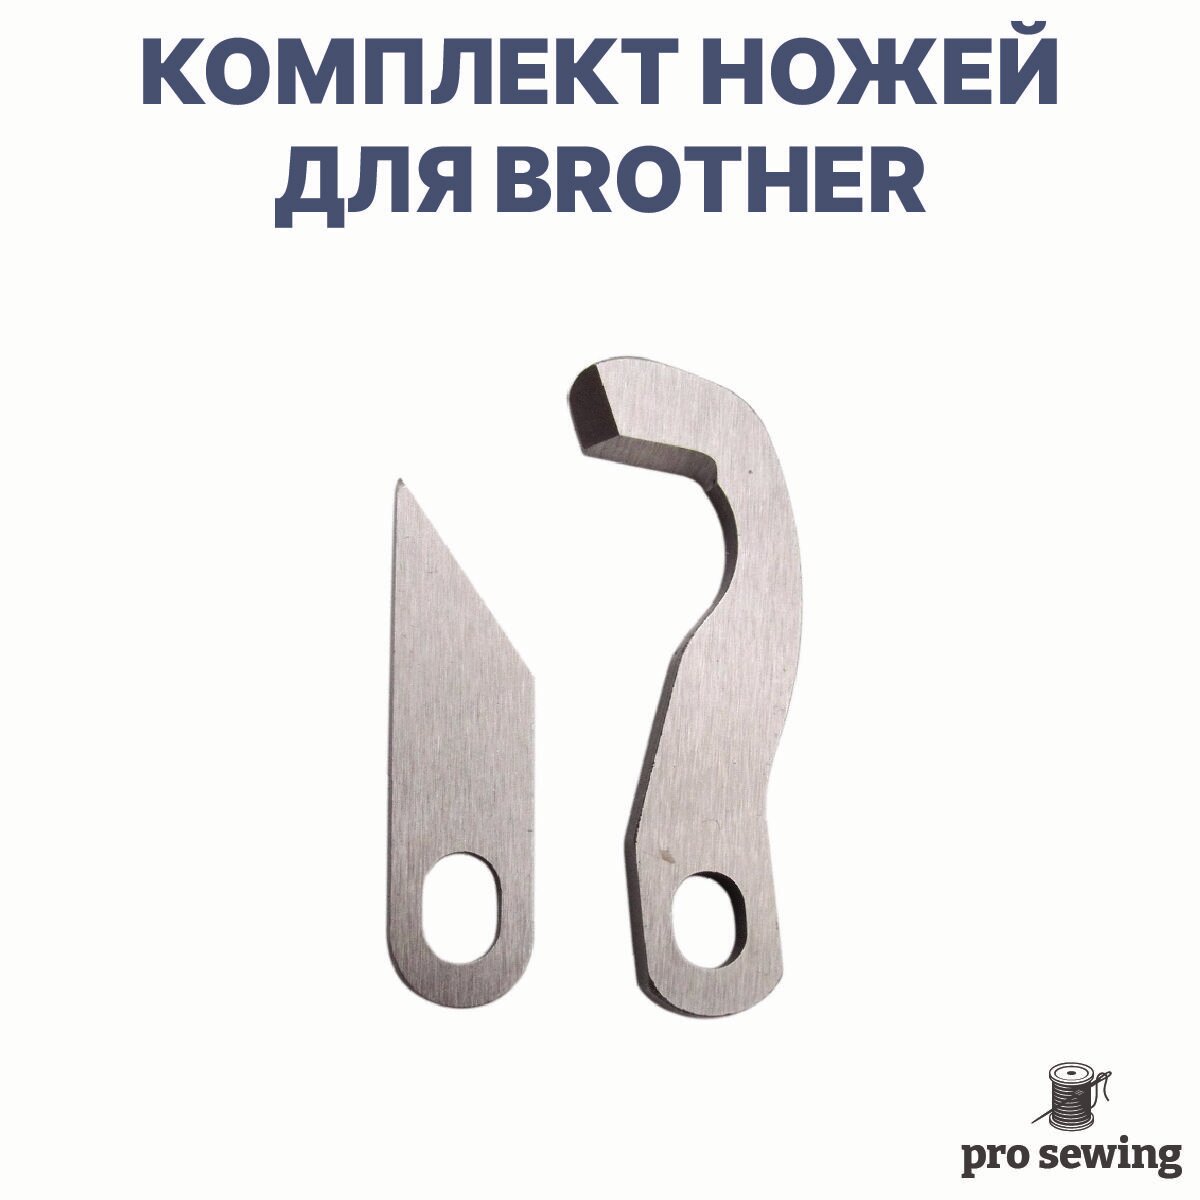 Верхний и нижний нож для швейных машин Brother 4100D 1534D 1034DX 1334DE 3034d 4234d и других